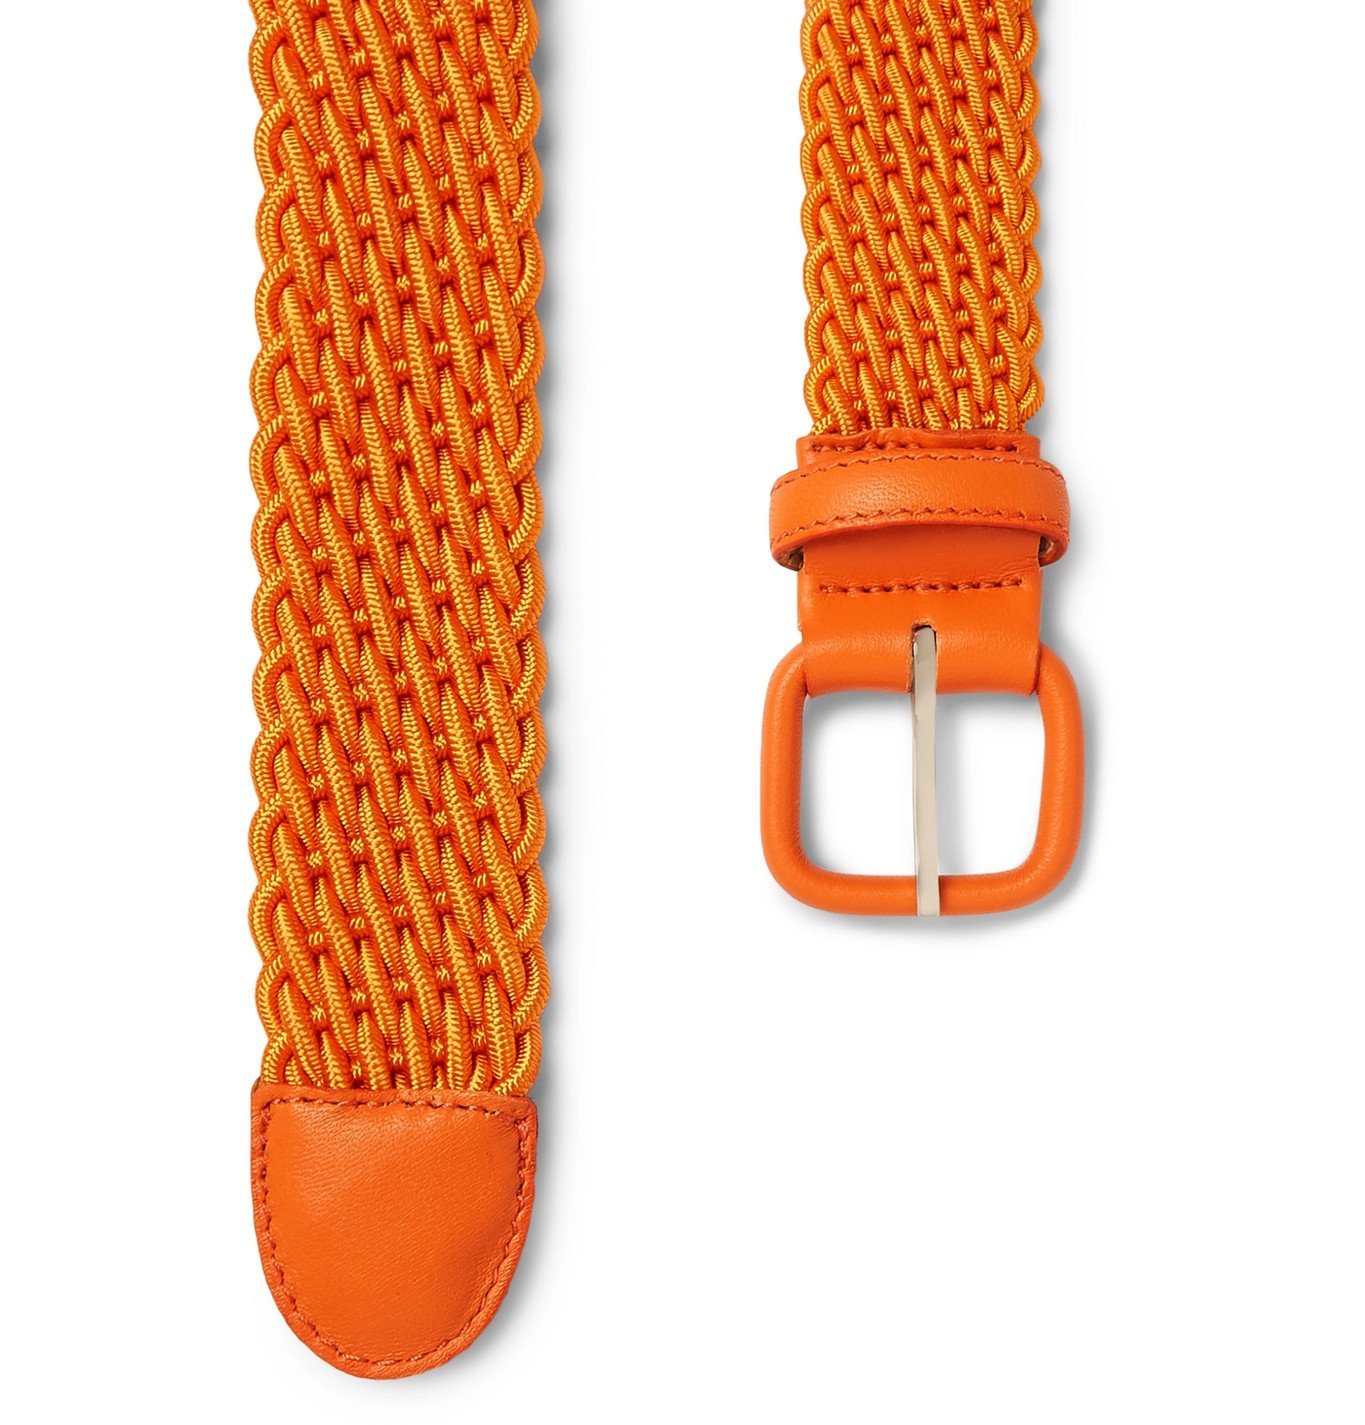 Charvet - 3cm Burgundy Leather-Trimmed Woven Elastic Belt - Orange Charvet